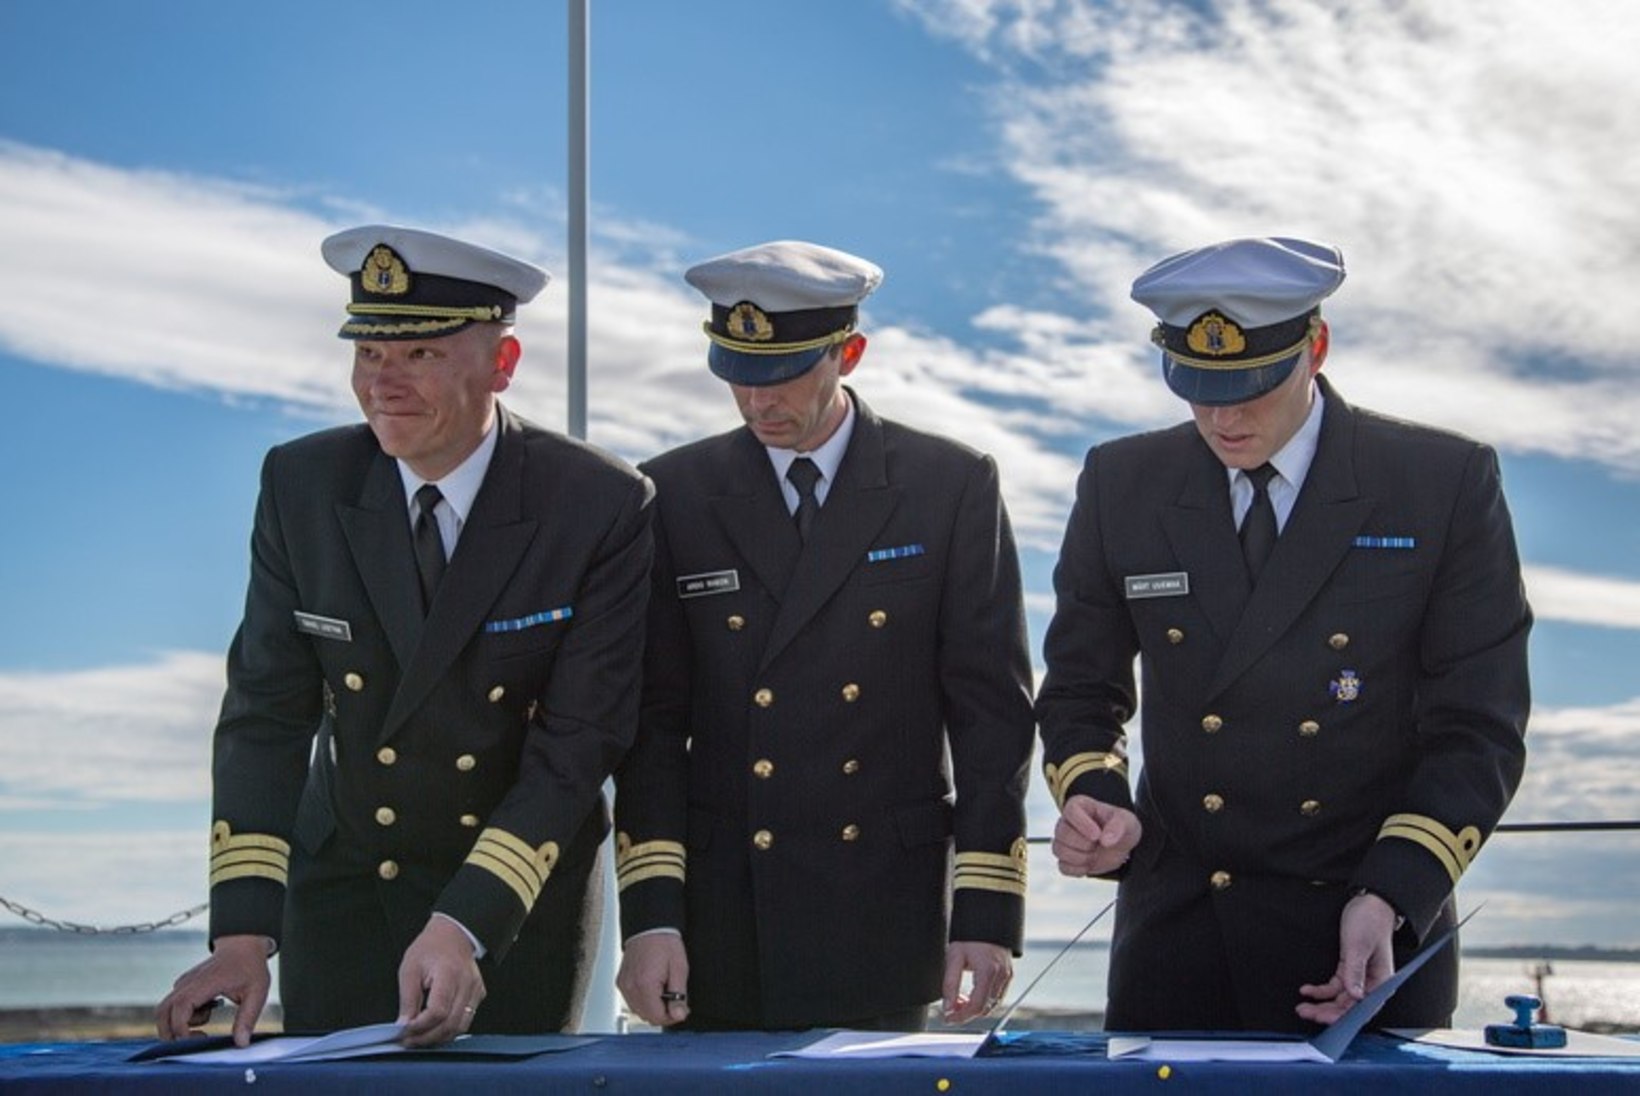 GALERII | Miinijahtija Admiral Cowan uus komandör on Ardo Riibon